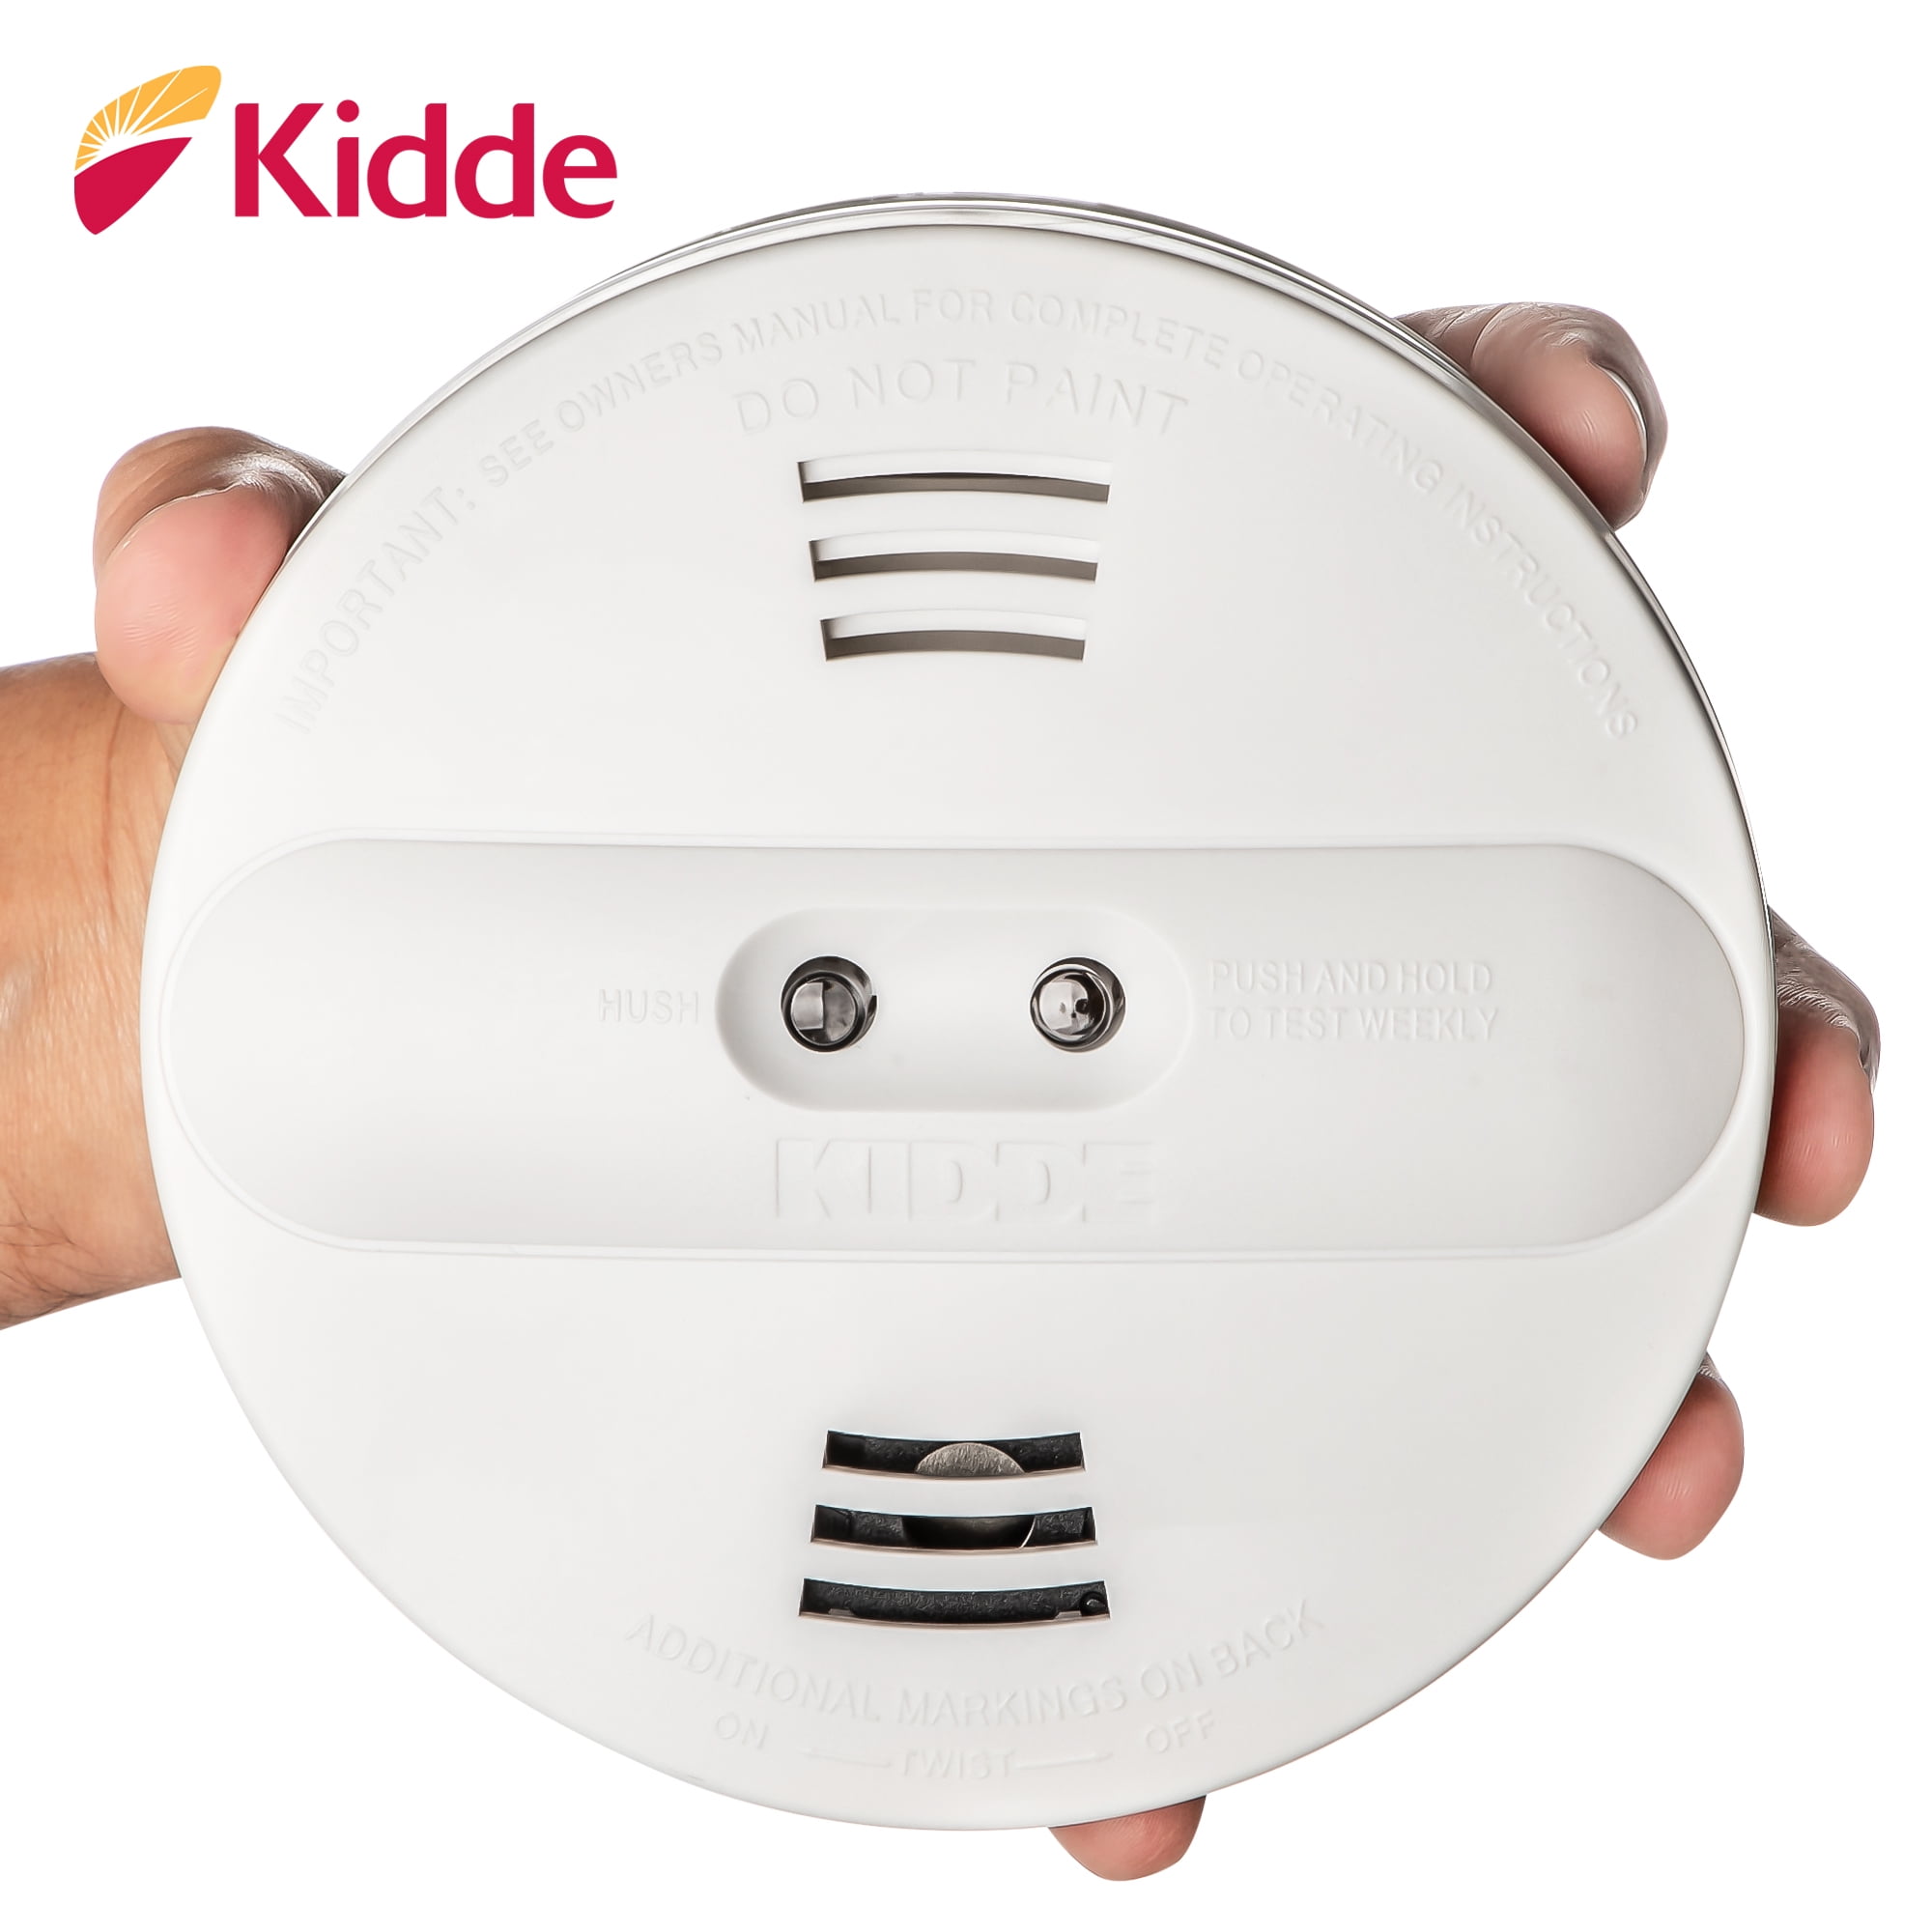 Kidde Dual Sensor Smoke Alarm, 85 Decibels, KIDDE